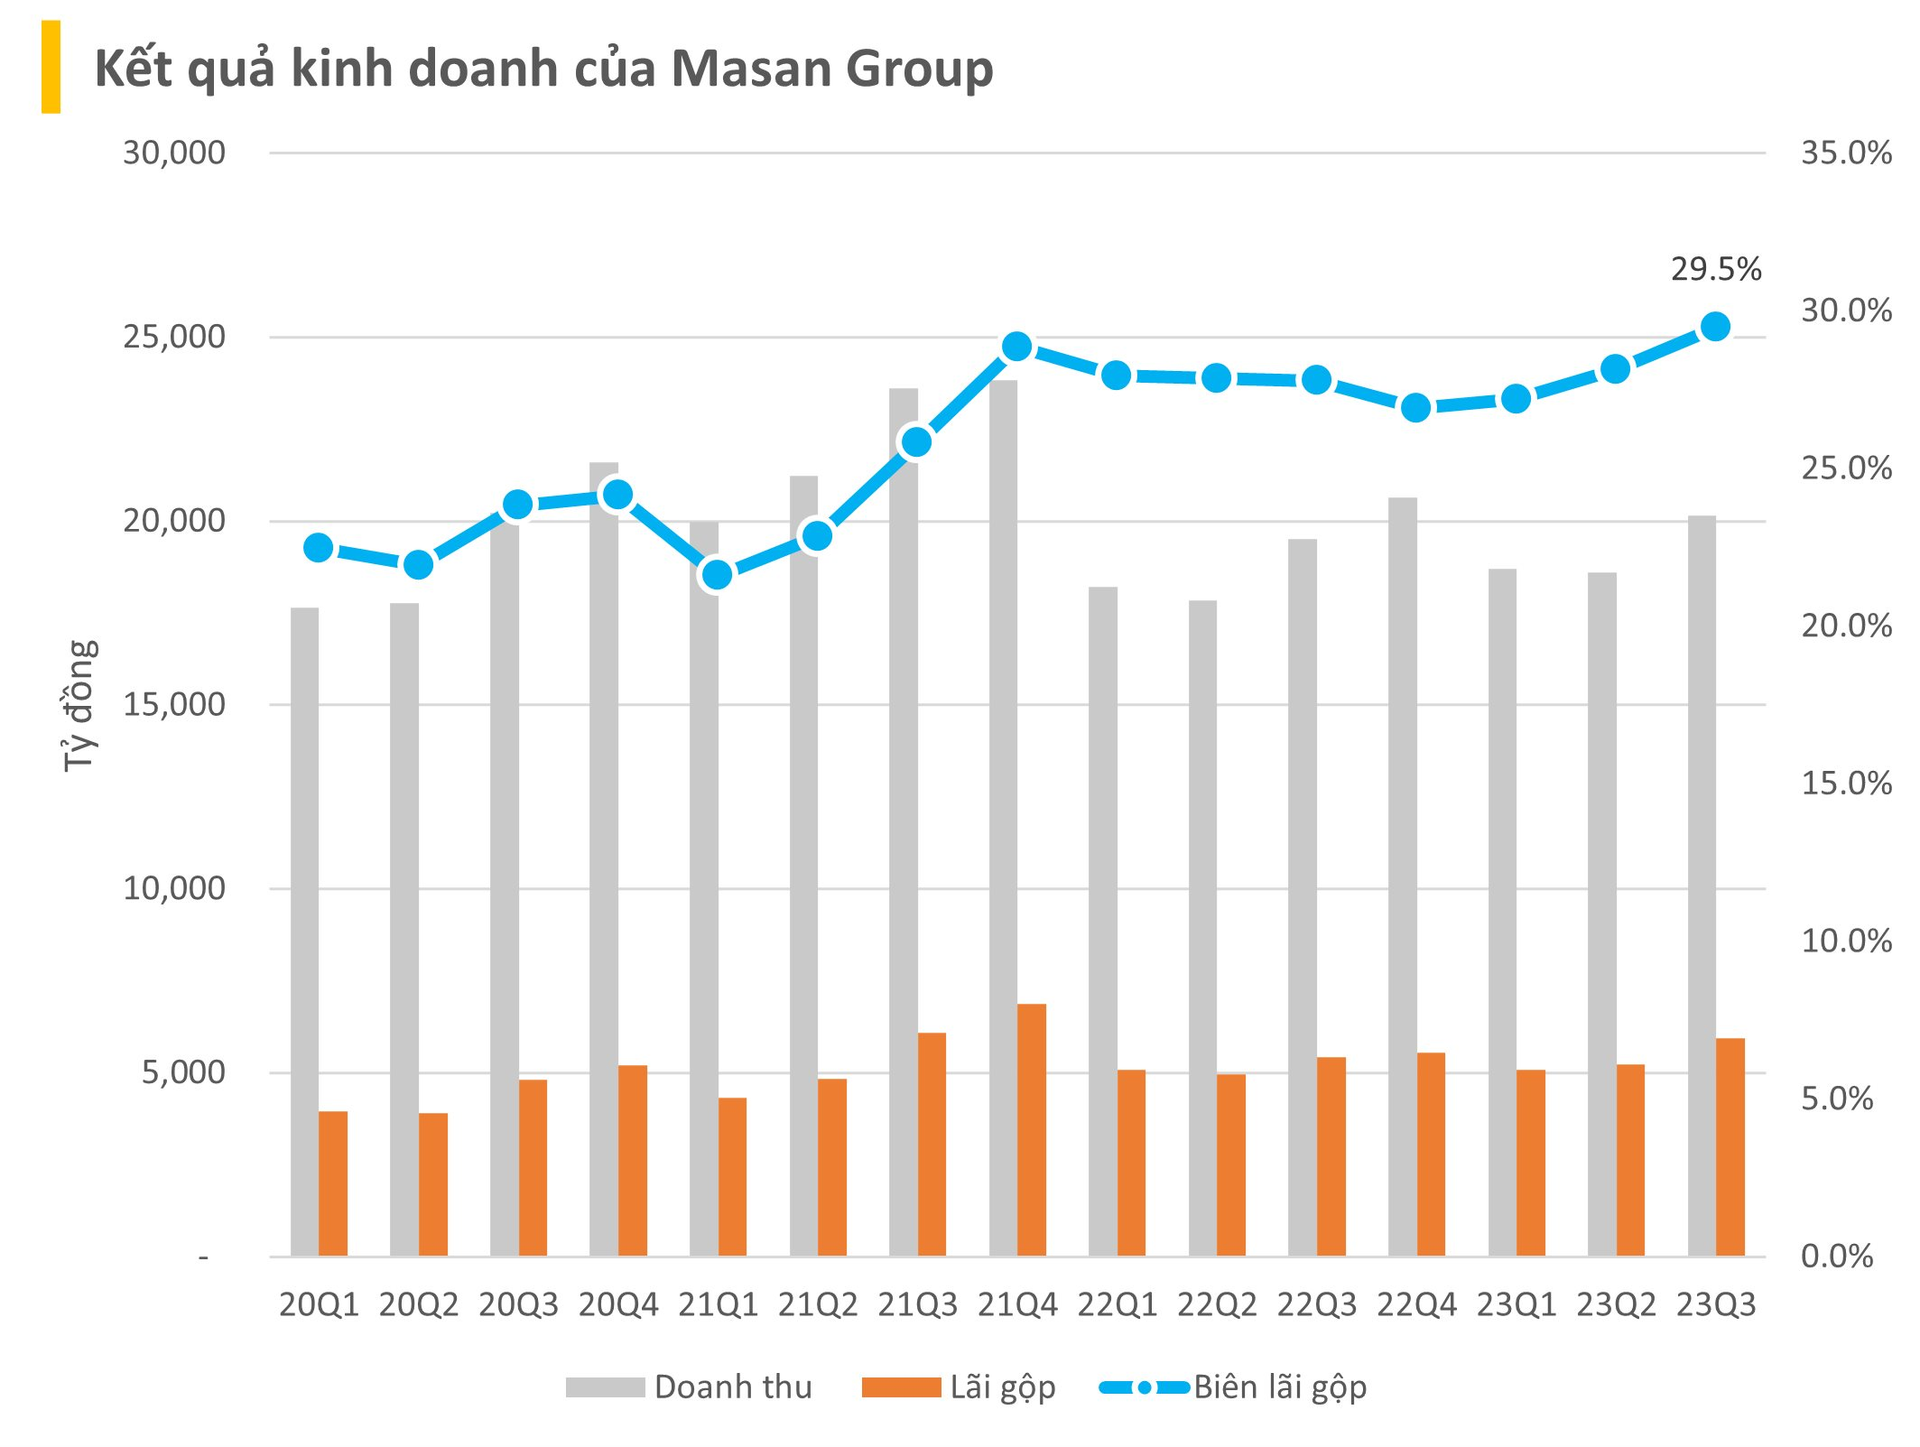 Masan (MSN) trấn an về tin đồn SK thoái vốn và Bain capital thực hiện hedging, công bố biên lãi gộp quý 3 lên cao nhất từ kể từ đầu 2020, Wincommerce gần đạt điểm hòa vốn EBIT - Ảnh 1.